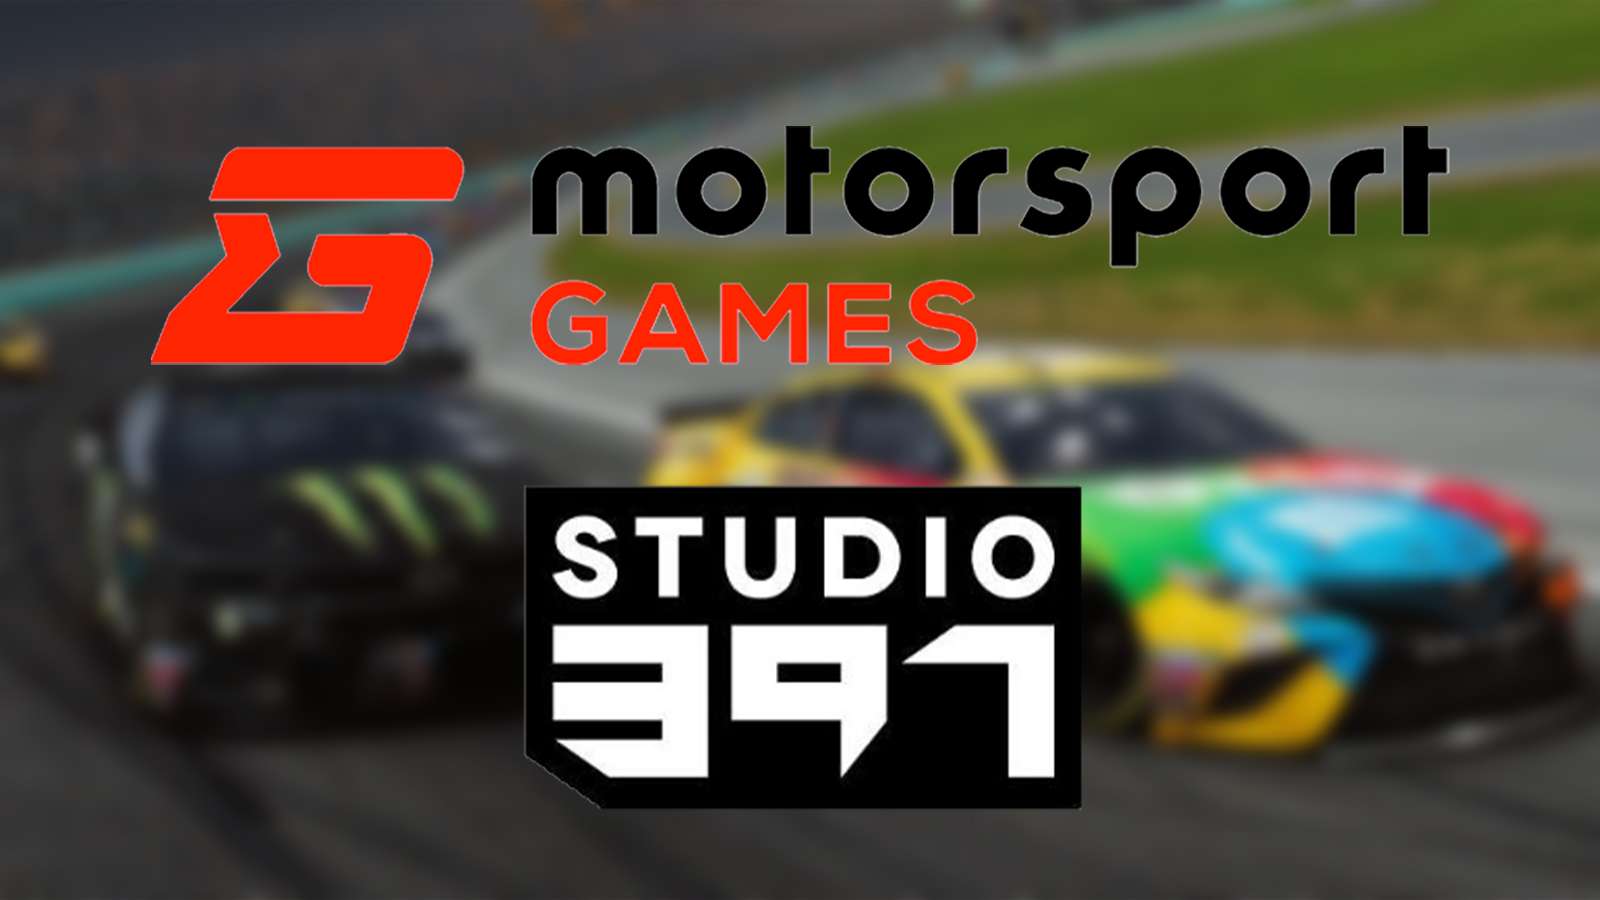 Motorsport Games studio 397 rFactor 2